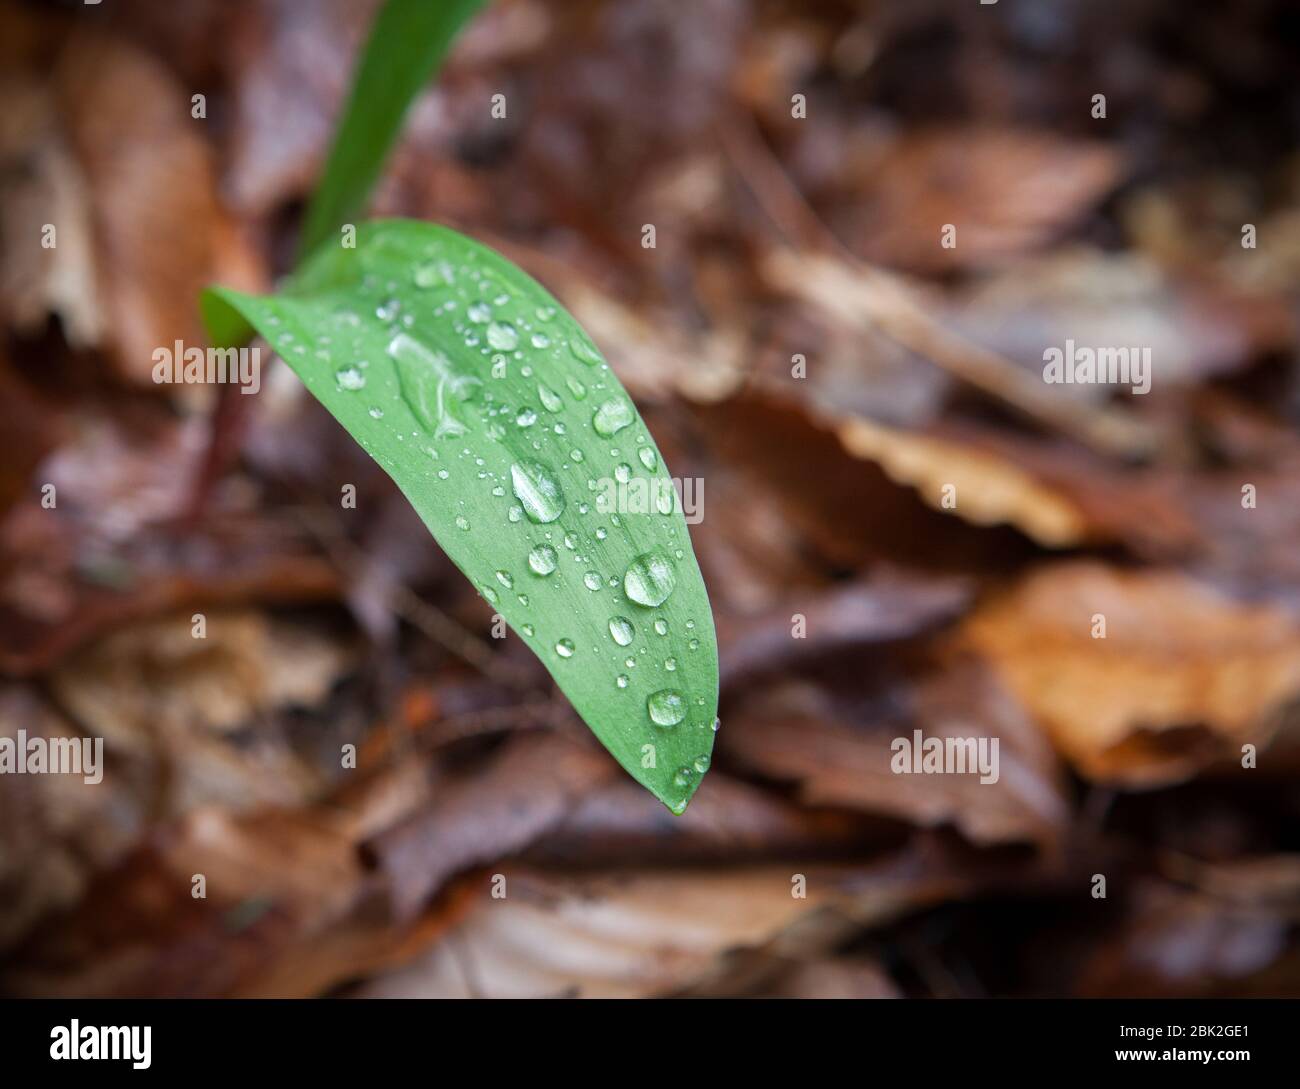 Des perles d'eau se trouvent sur la feuille d'une plante de phoque de Salomon (Polygonatum), sur le fond de la forêt, avec des feuilles mortes mouillées en arrière-plan, à Ithaca, NY, USA Banque D'Images